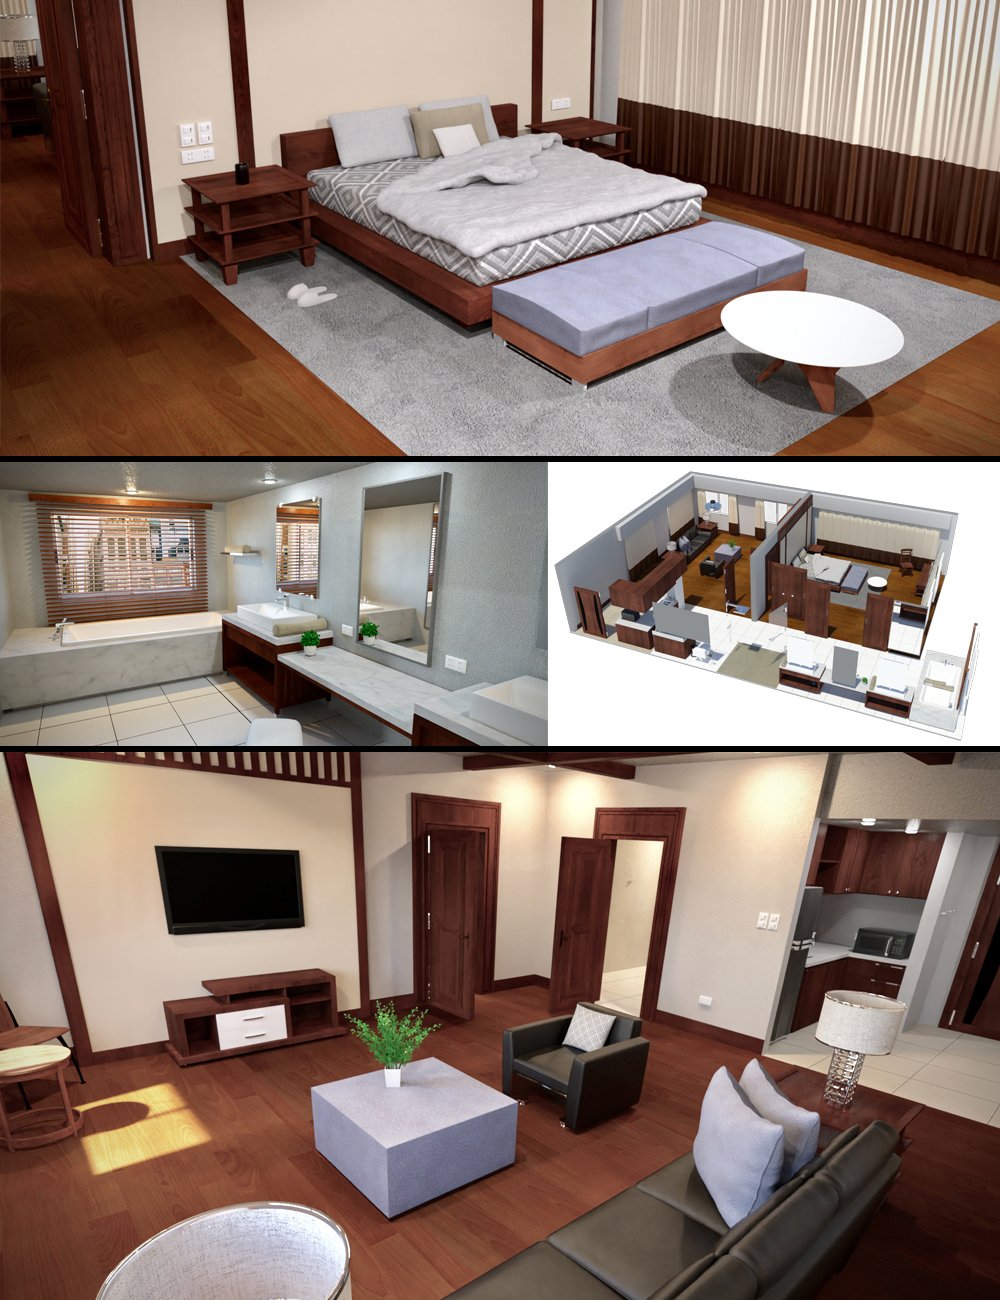 Veranda Suite by: Tesla3dCorp, 3D Models by Daz 3D